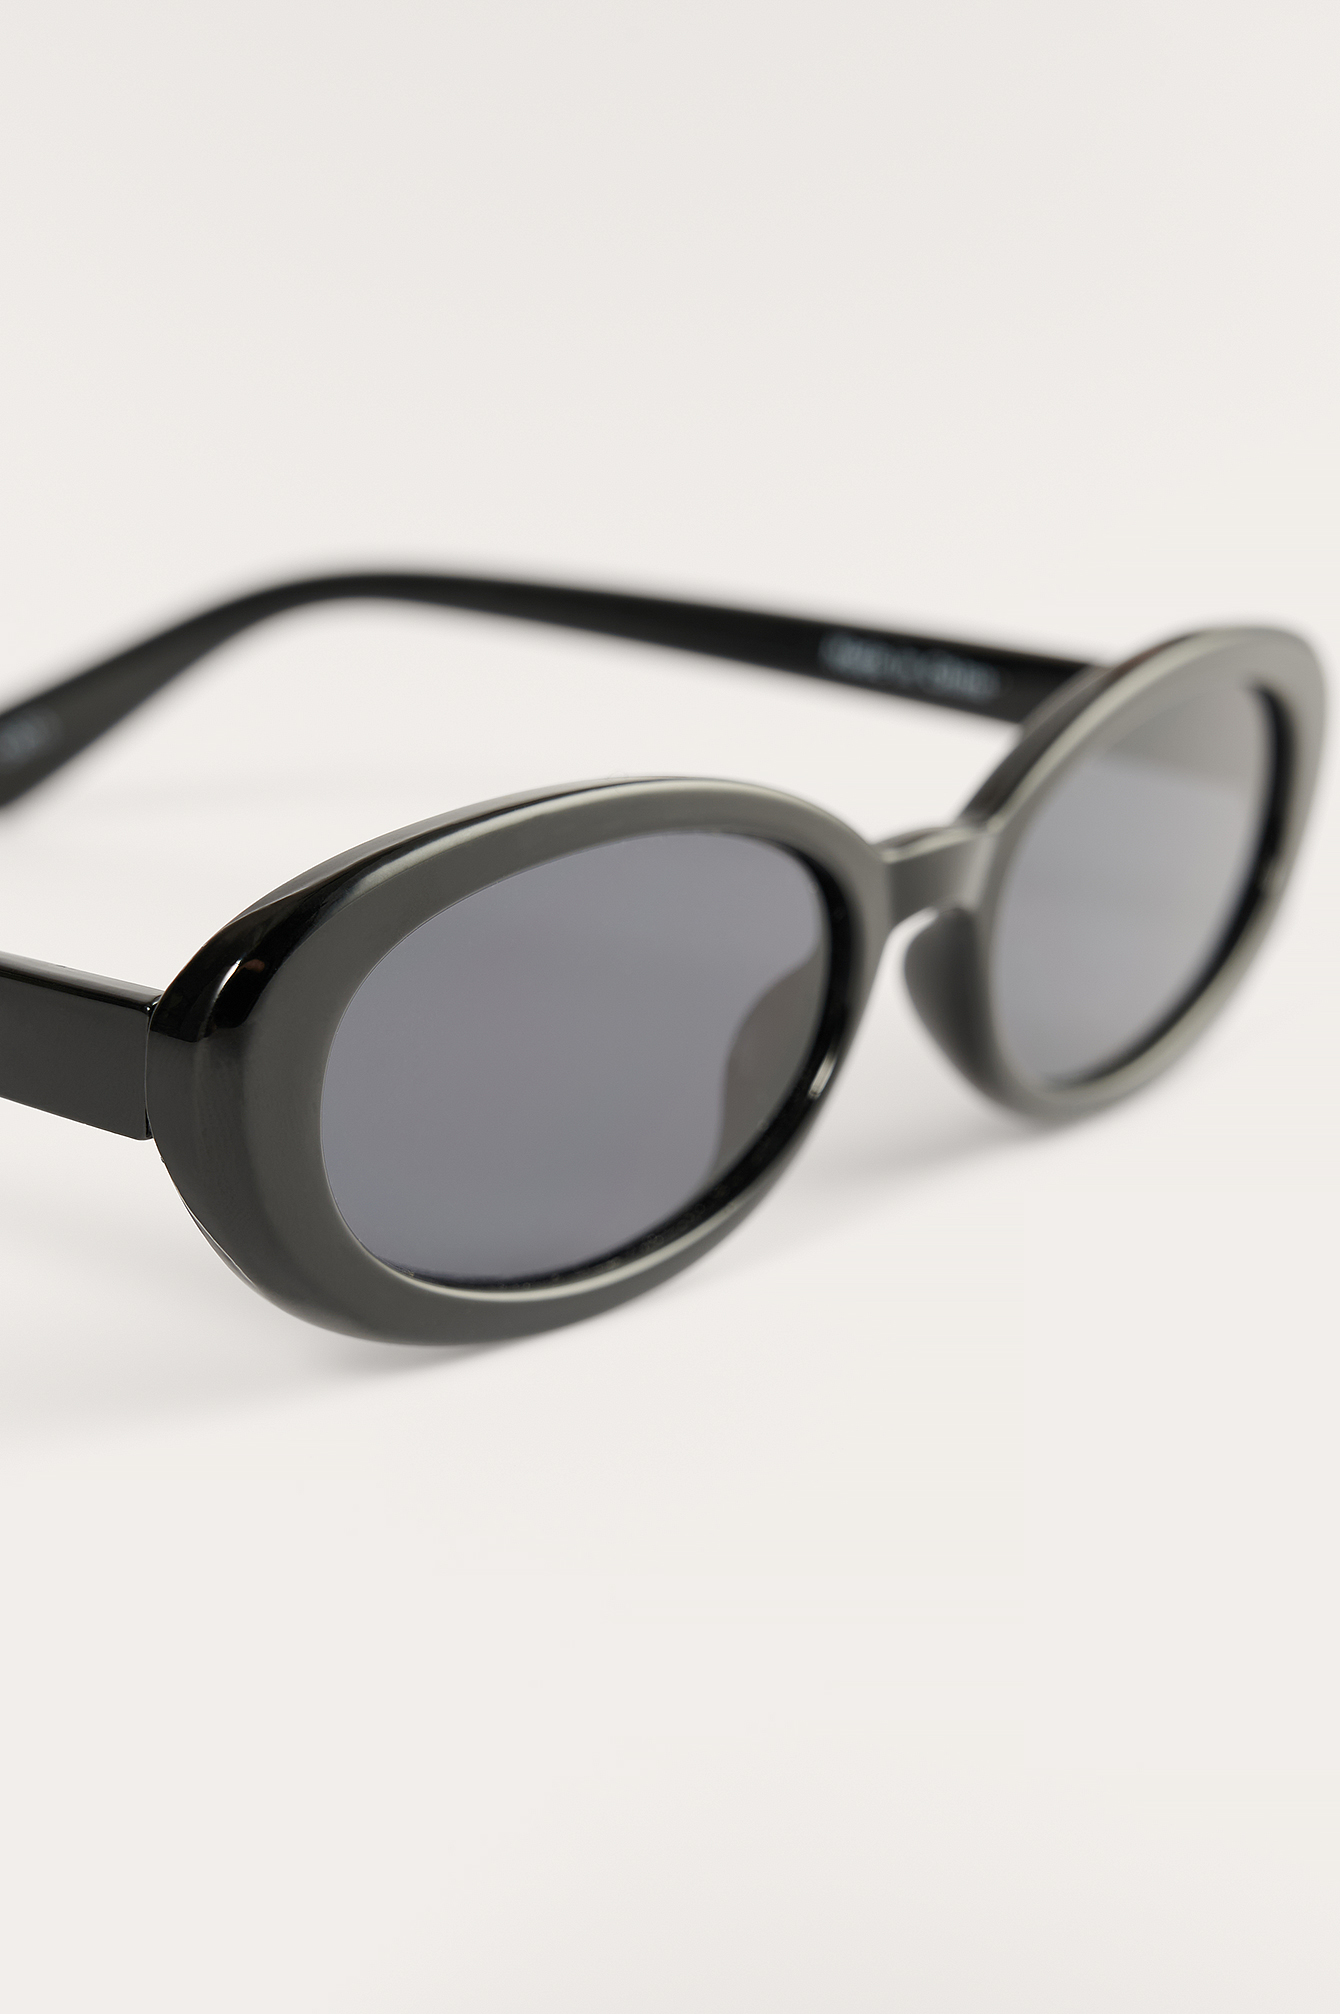 Gouden Edgy-Round Zwarte Zonnebril Accessoires Zonnebrillen & Eyewear Zonnebrillen 